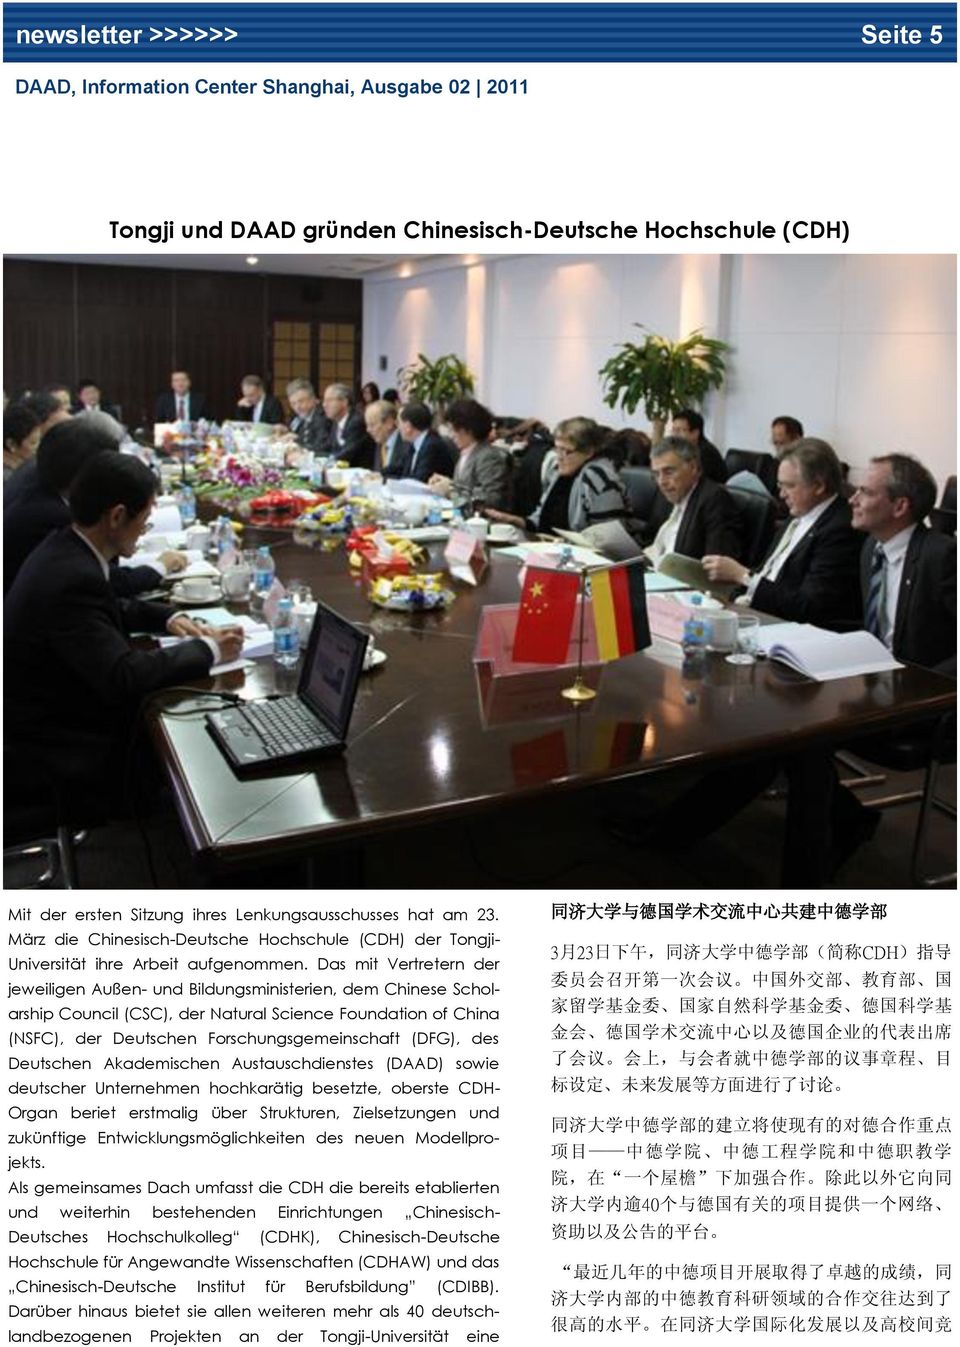 Das mit Vertretern der jeweiligen Außen- und Bildungsministerien, dem Chinese Scholarship Council (CSC), der Natural Science Foundation of China (NSFC), der Deutschen Forschungsgemeinschaft (DFG),